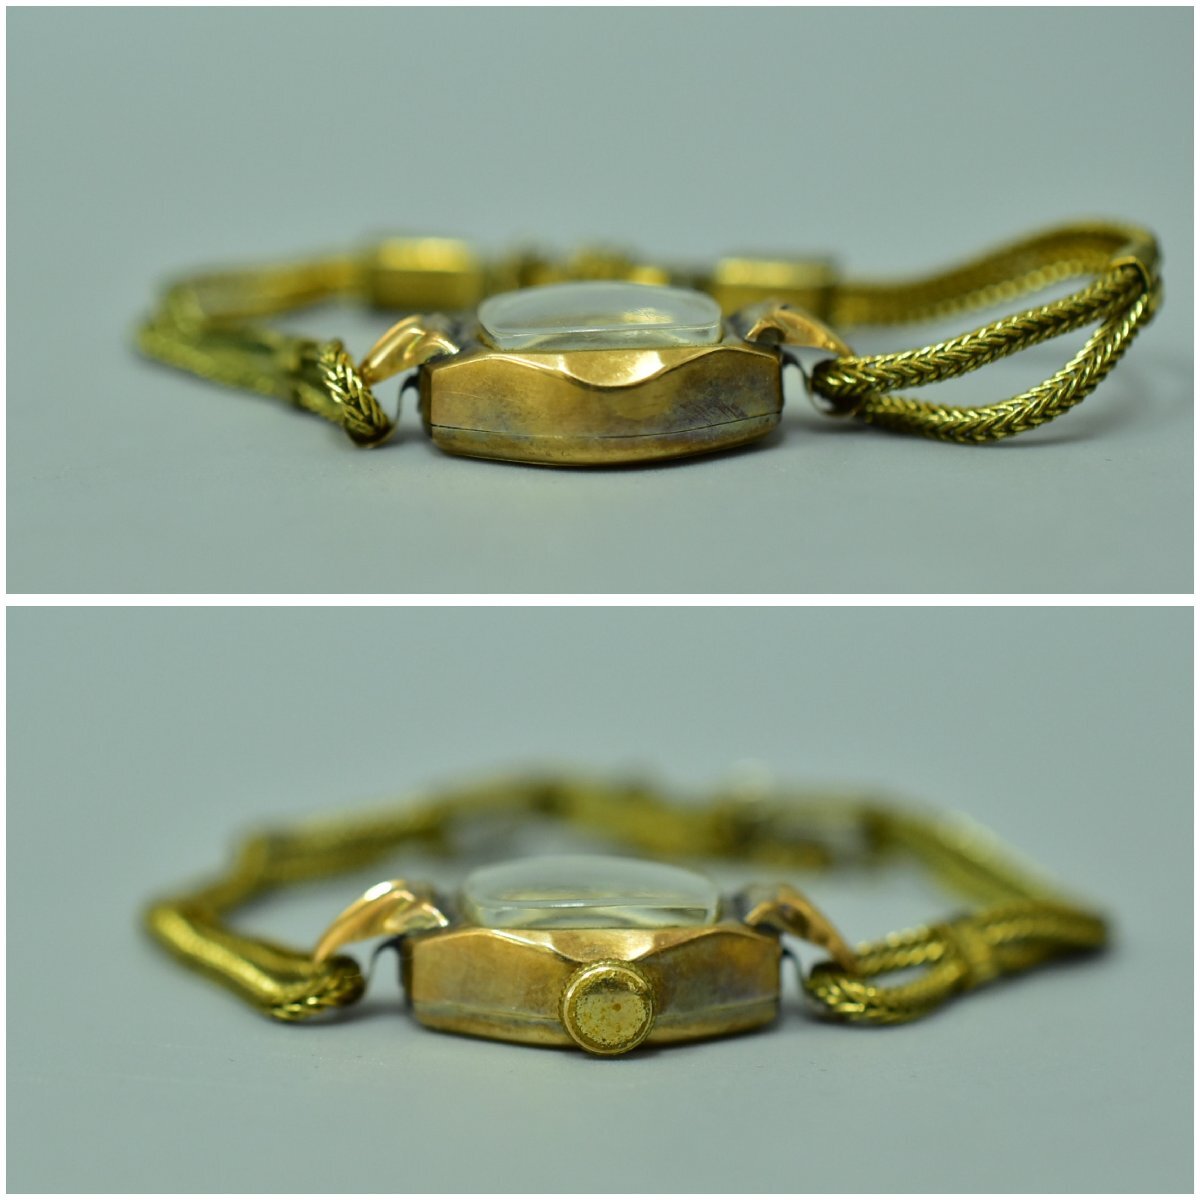 (1-115)SELLITAselita женские наручные часы 14k 0.585 золотой цвет Gold цвет ANTIMAGNETIC Швейцария работоспособность не проверялась [ зеленый мир .]